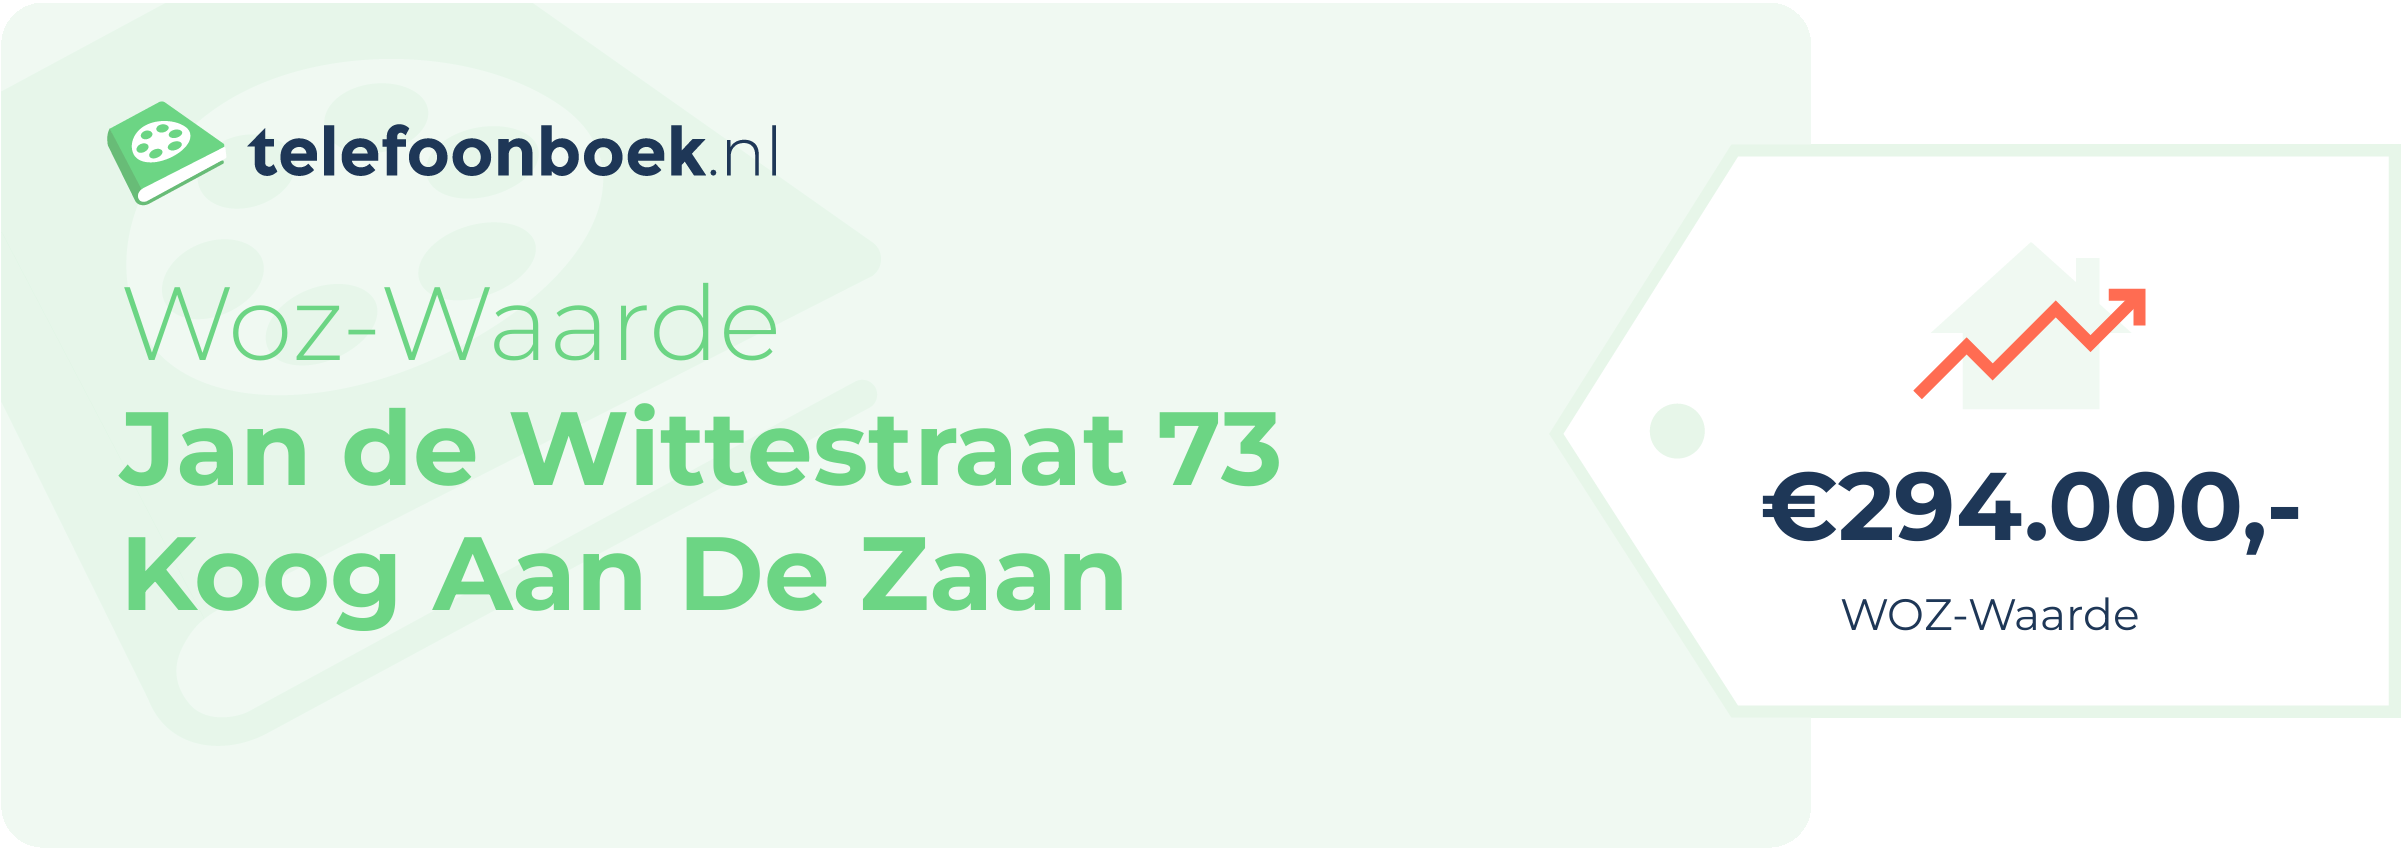 WOZ-waarde Jan De Wittestraat 73 Koog Aan De Zaan